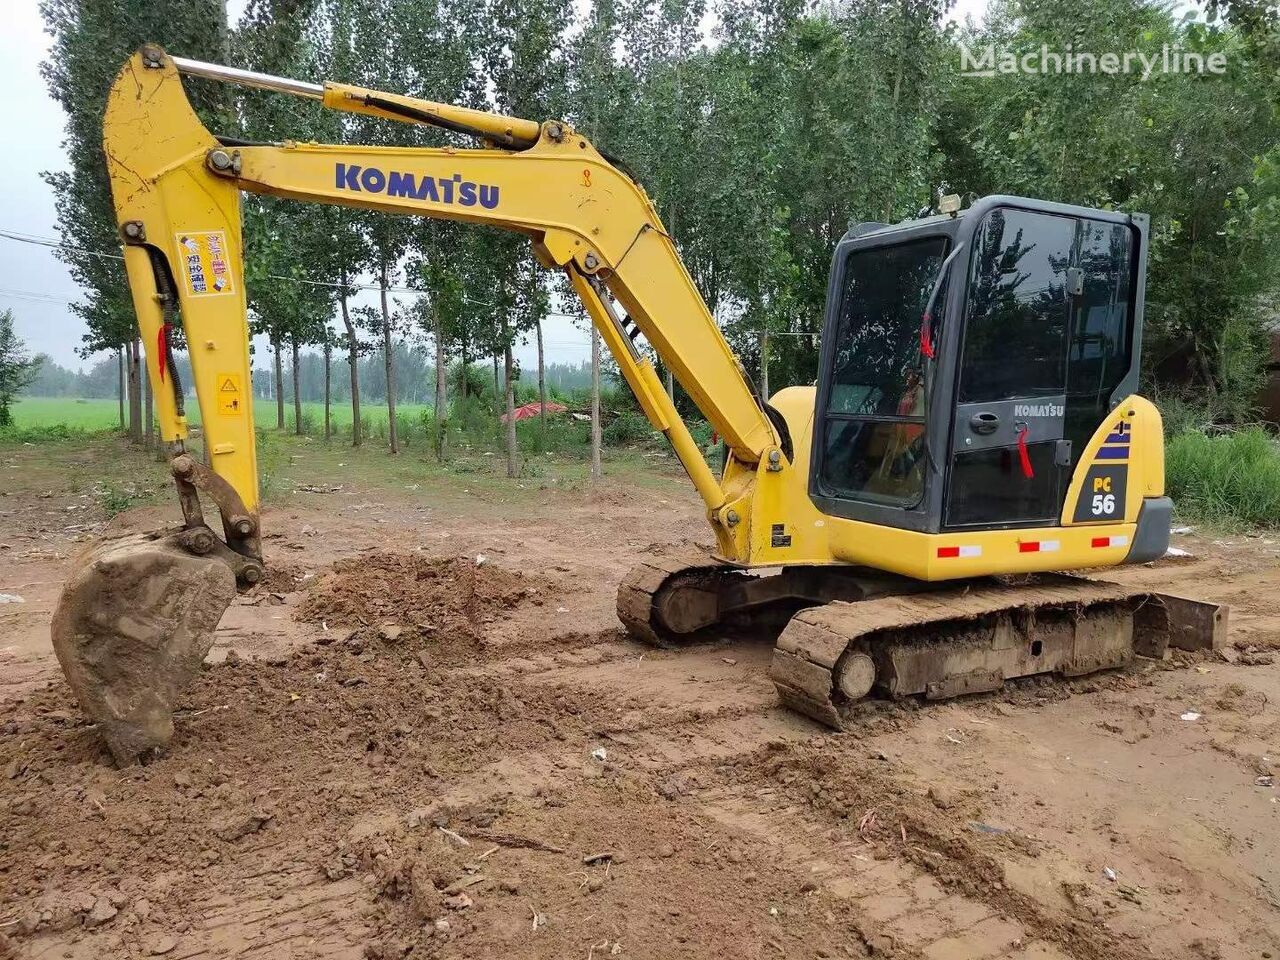 Miniexcavadora KOMATSU PC56 small excavator 5.6 tons: foto 2